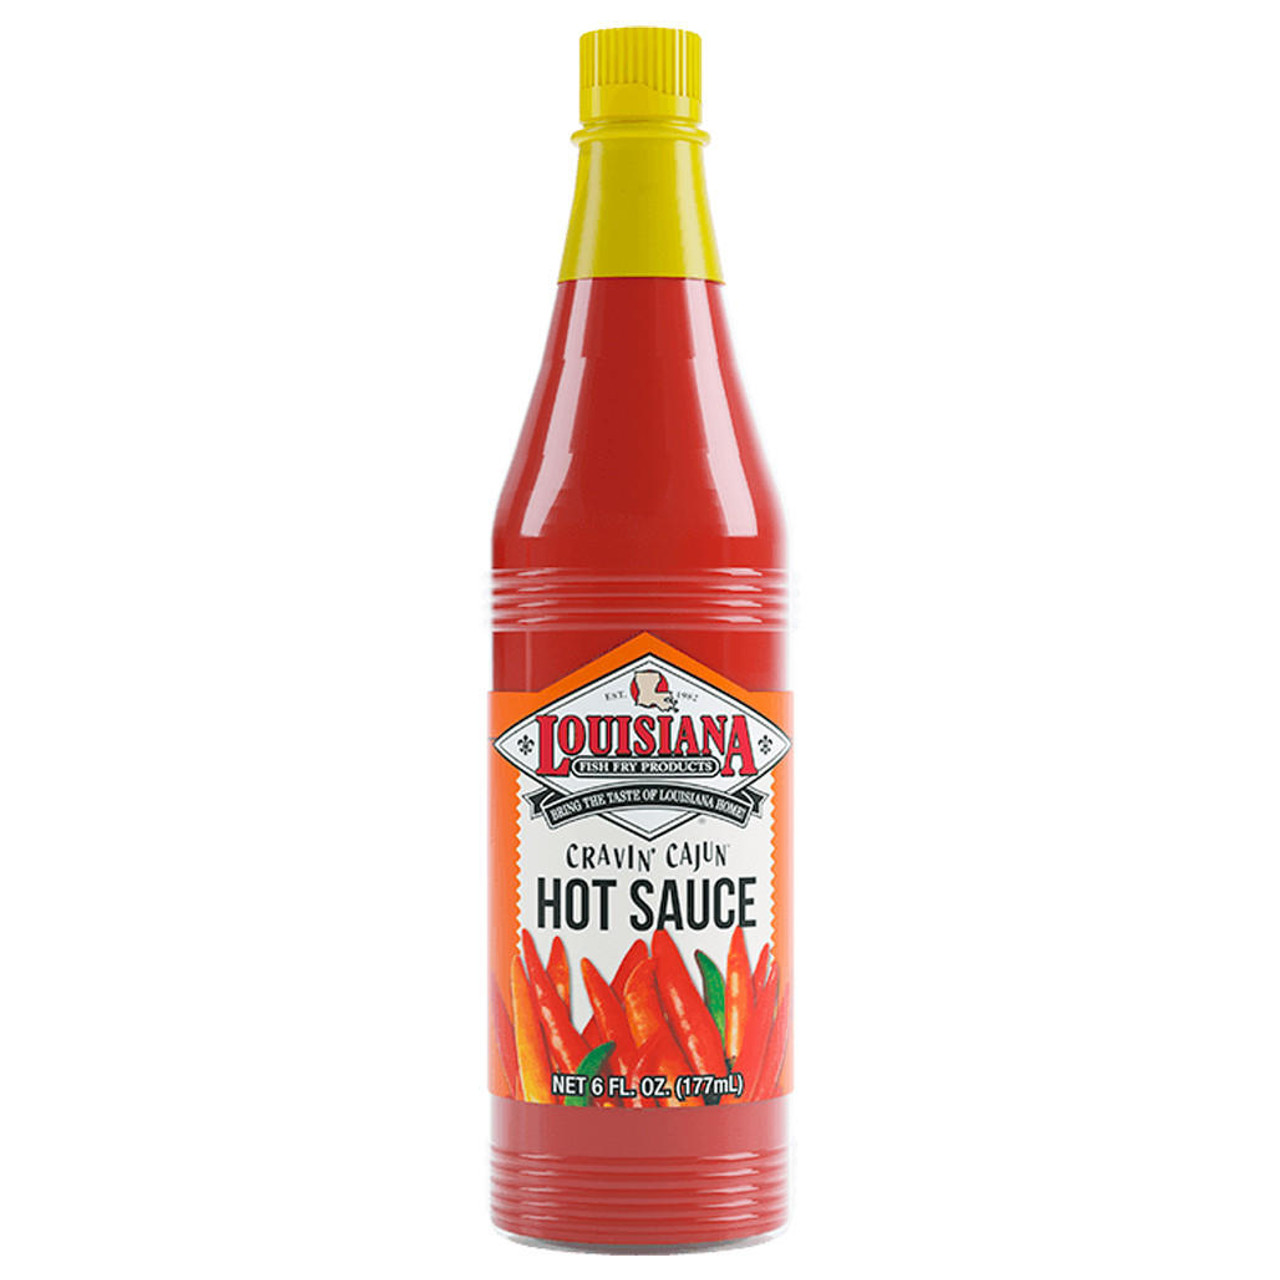 Hot Sauce - Cravin' Cajun, 6oz